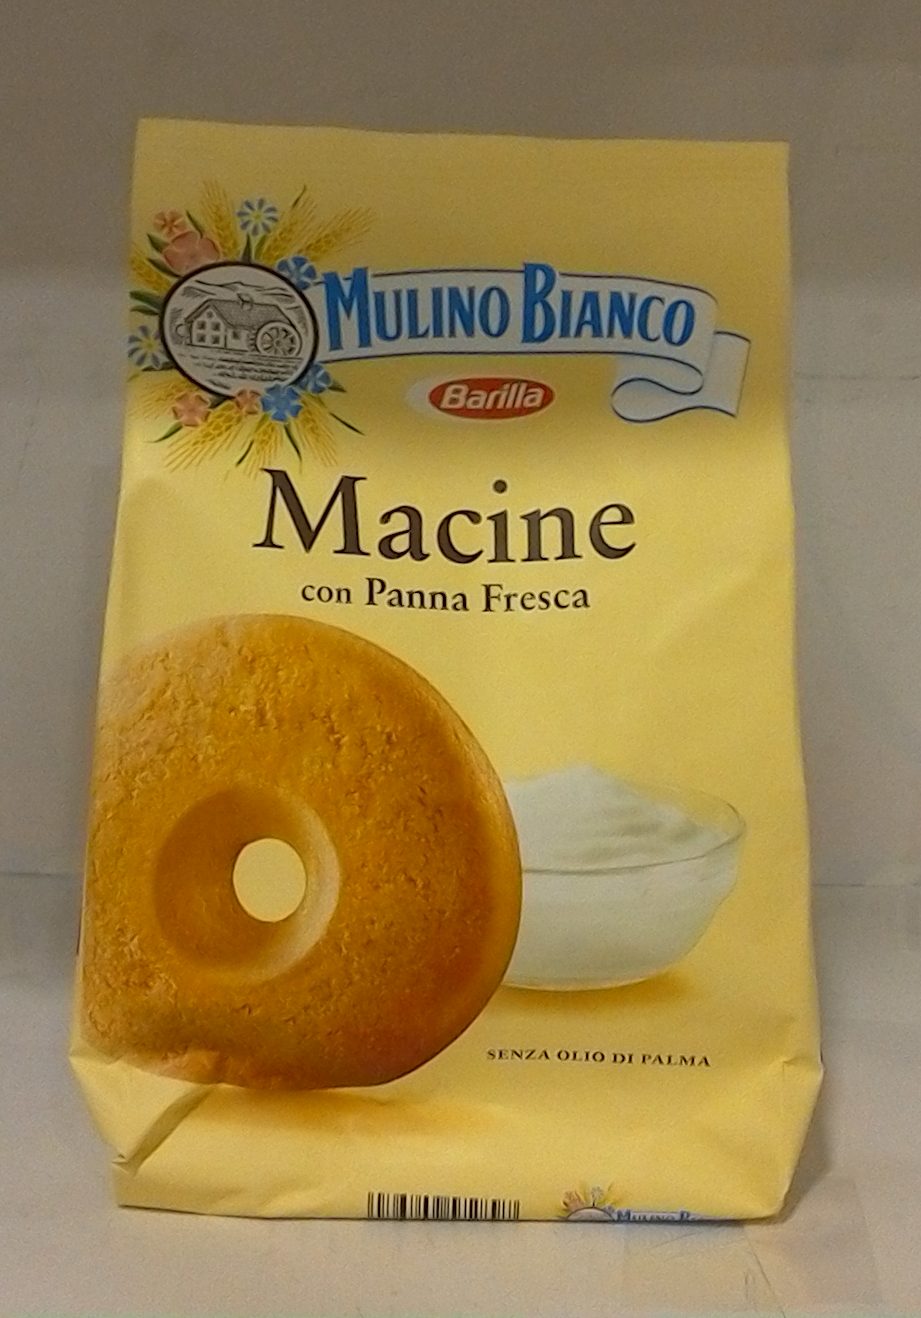 MULINO BIANCO Macine 350g